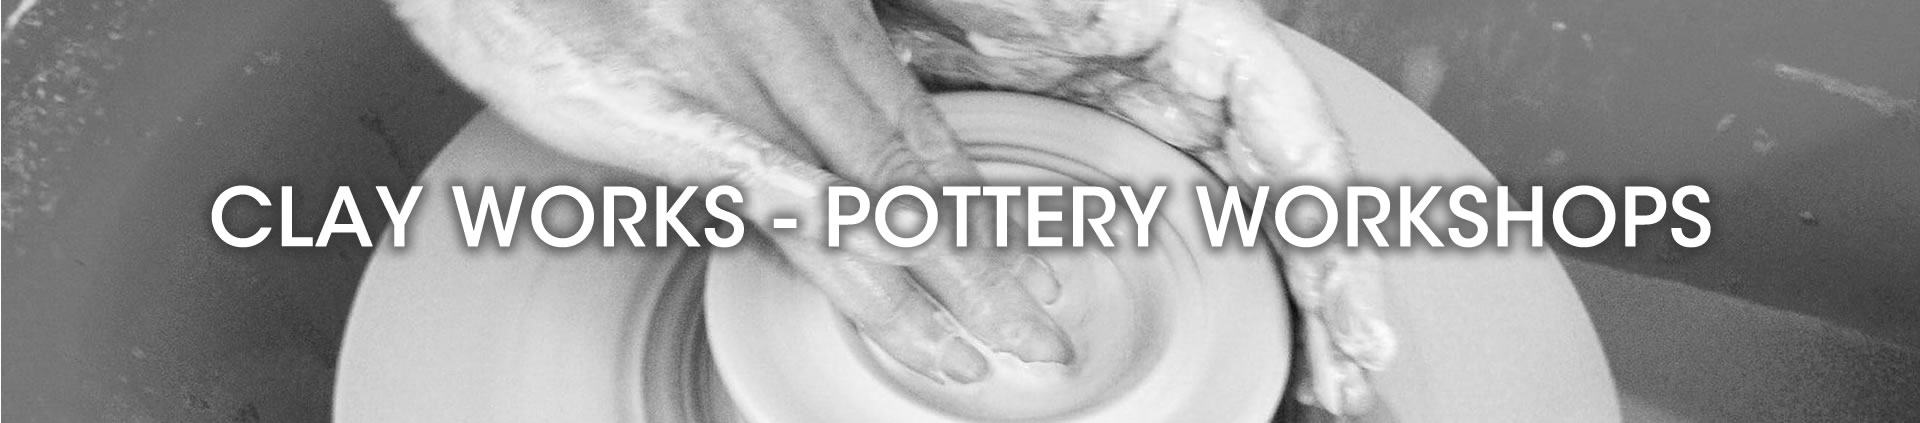 pottery workshops